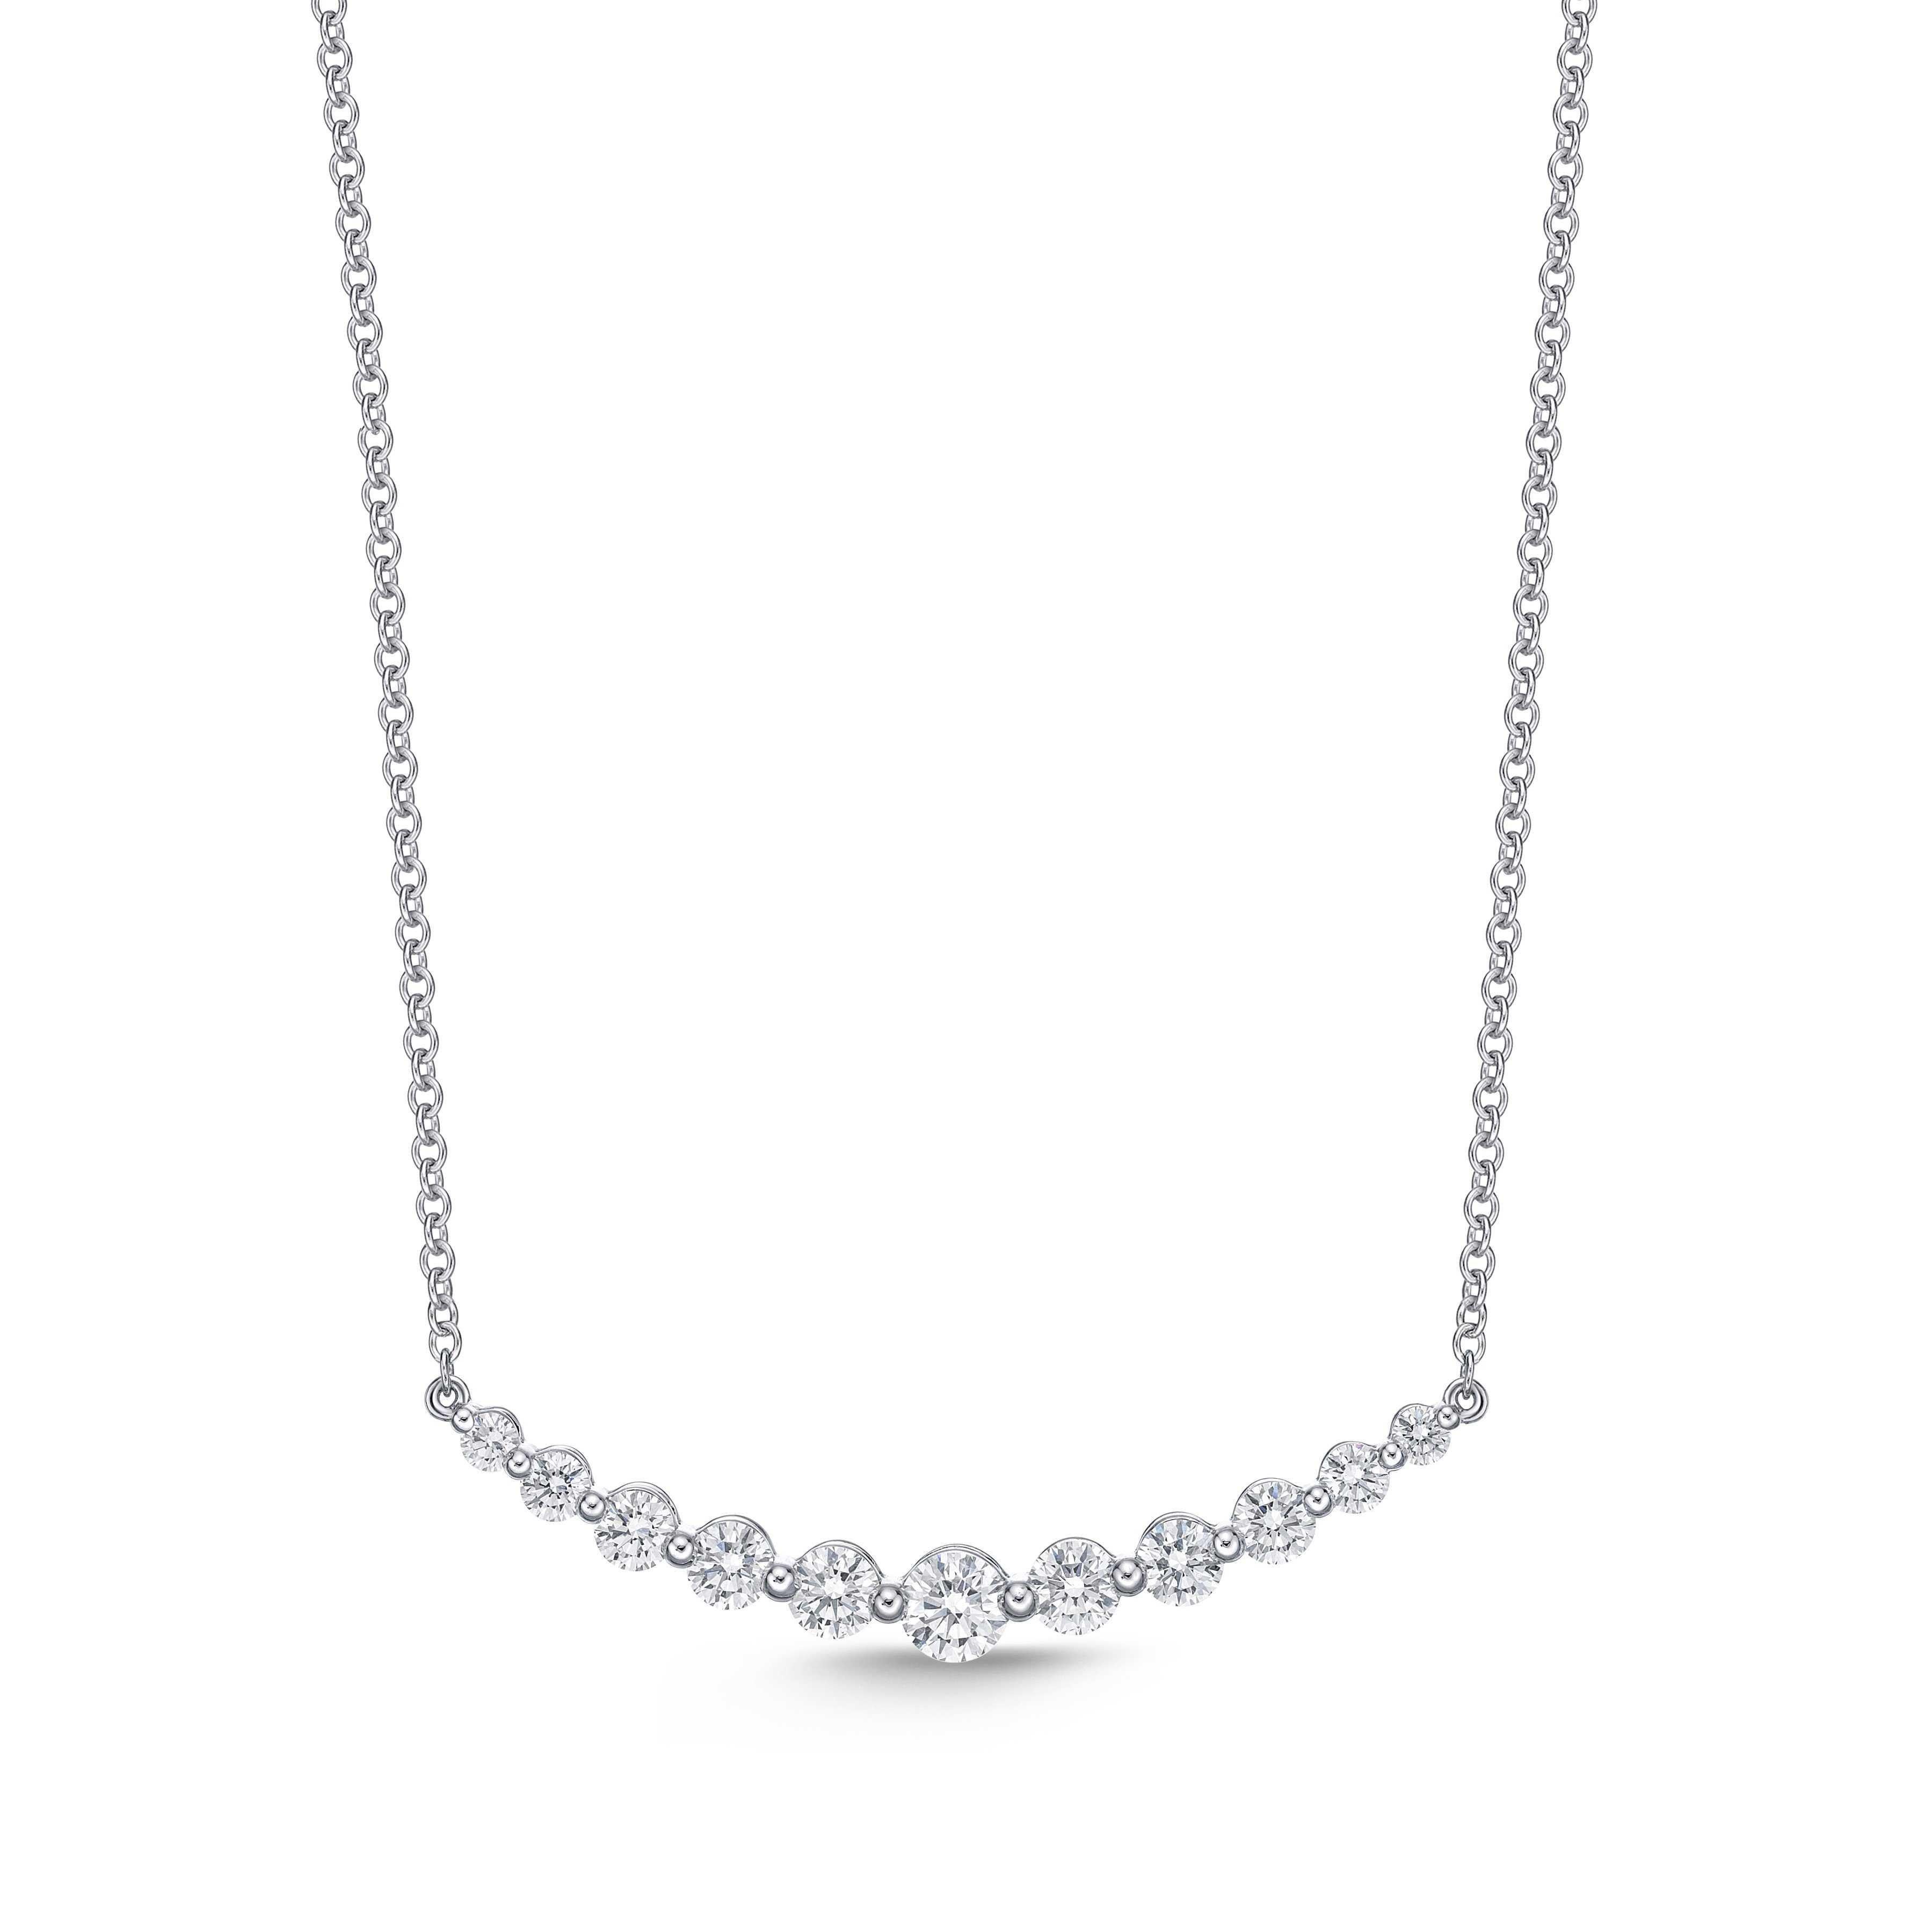 Ce collier Memoire Diamond Classic Smile est réalisé en or blanc 18 carats et mesure 18 pouces pour un poids de 3,9 grammes. Il comprend 11 diamants taille brillant, d'un poids total de 1,08 carat, de couleur F-G et de pureté VS1-VS2.